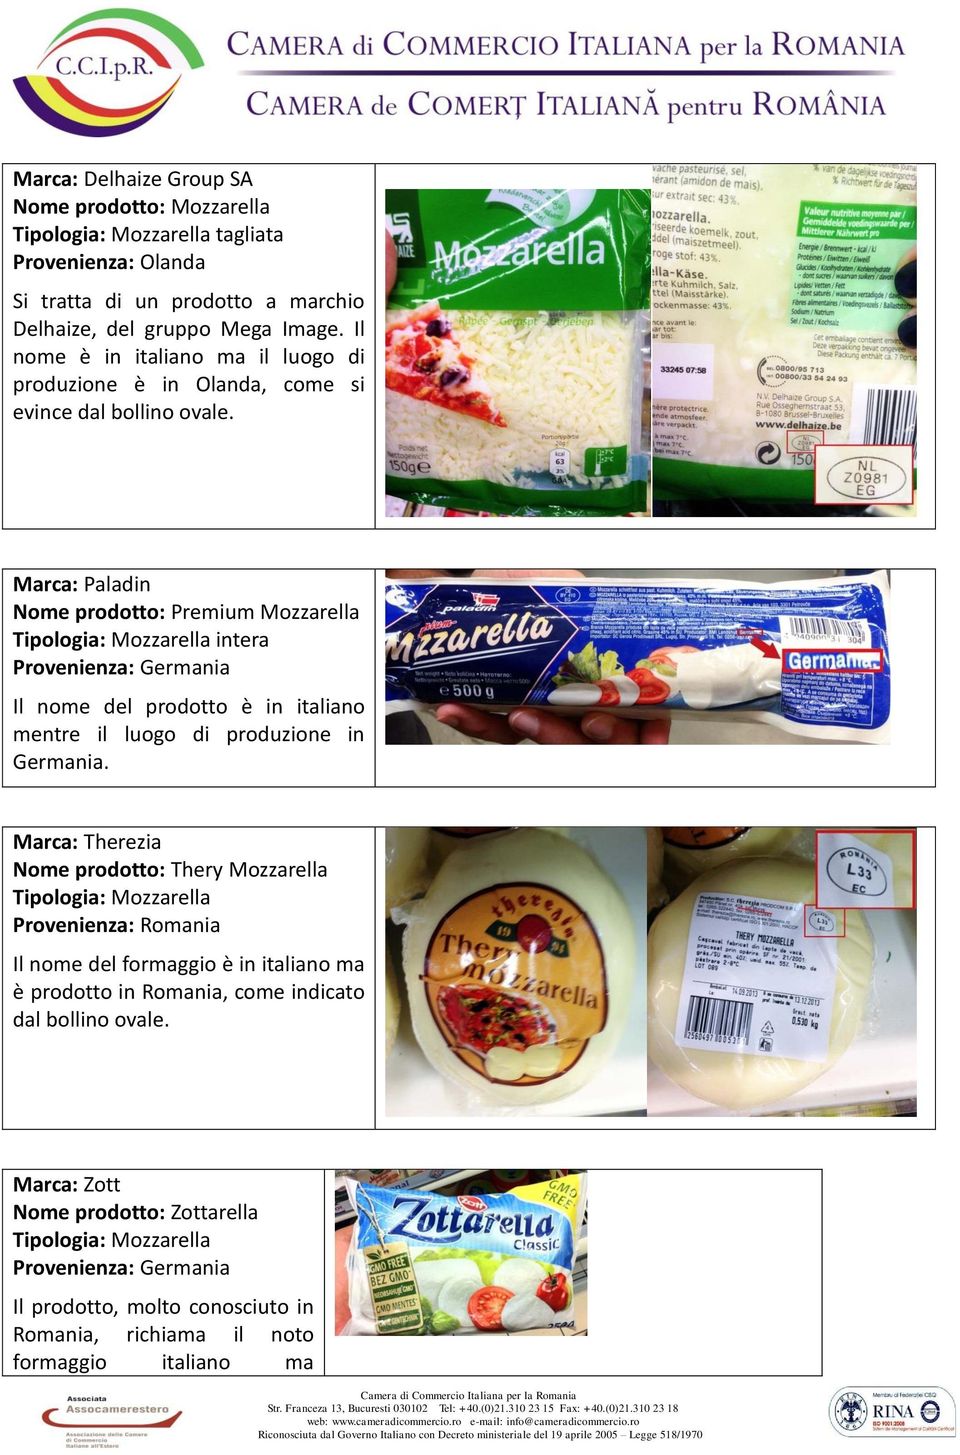 Marca: Paladin Nome prodotto: Premium Mozzarella Tipologia: Mozzarella intera Provenienza: Germania Il nome del prodotto è in italiano mentre il luogo di produzione in Germania.